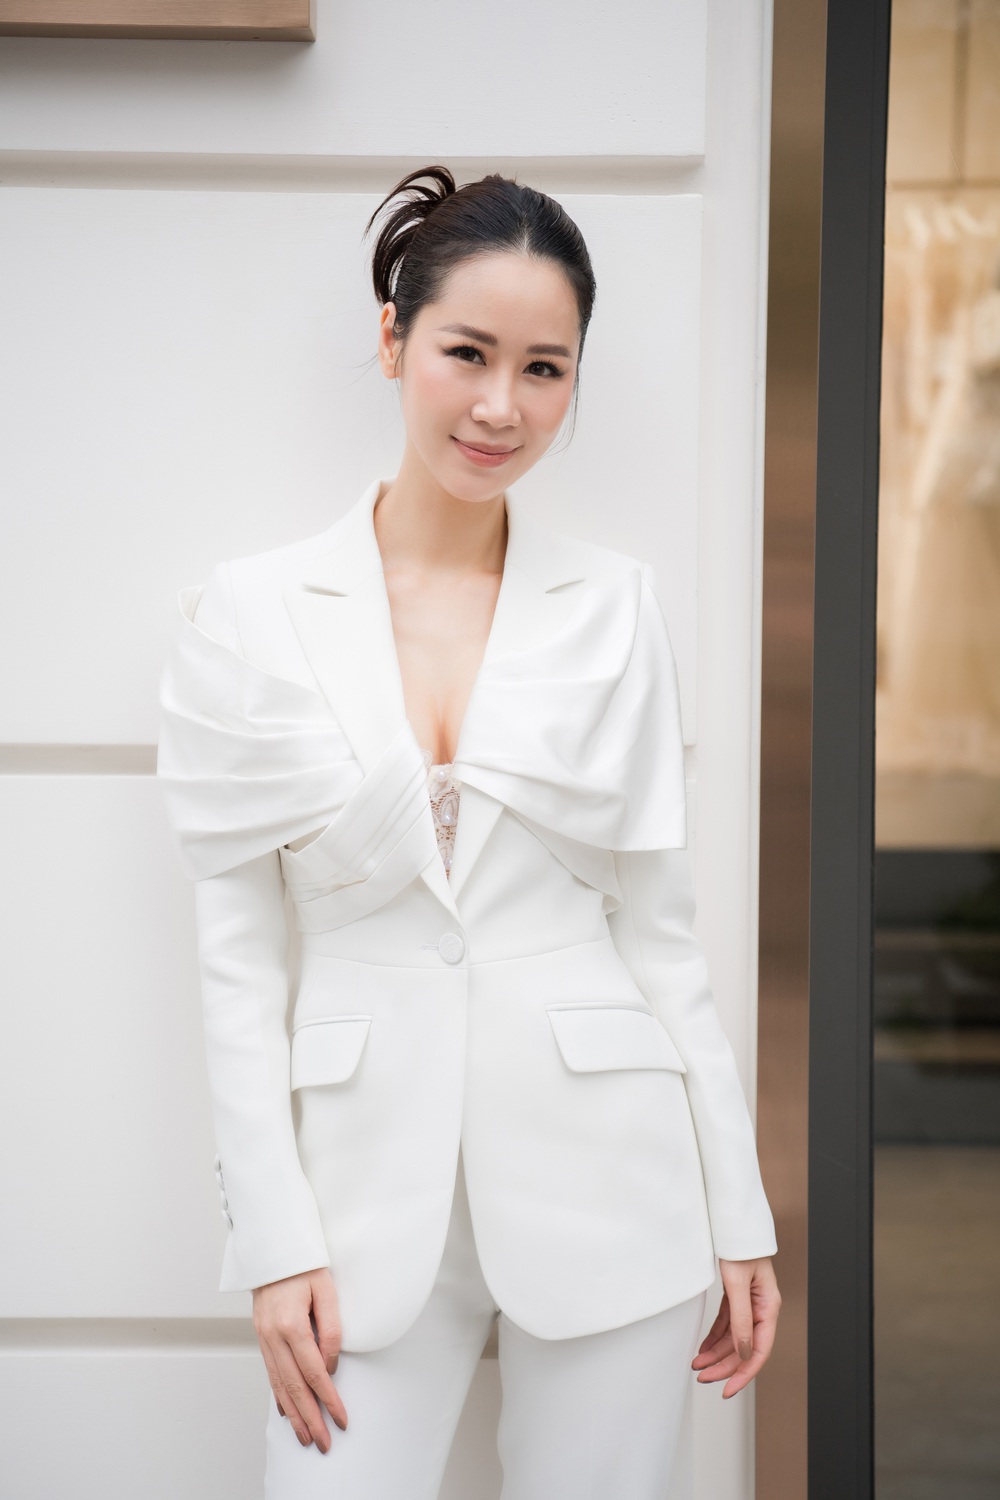 Hoa hậu Đỗ Mỹ Linh đọ sắc cùng dàn mỹ nhân nổi tiếng - Ảnh 7.